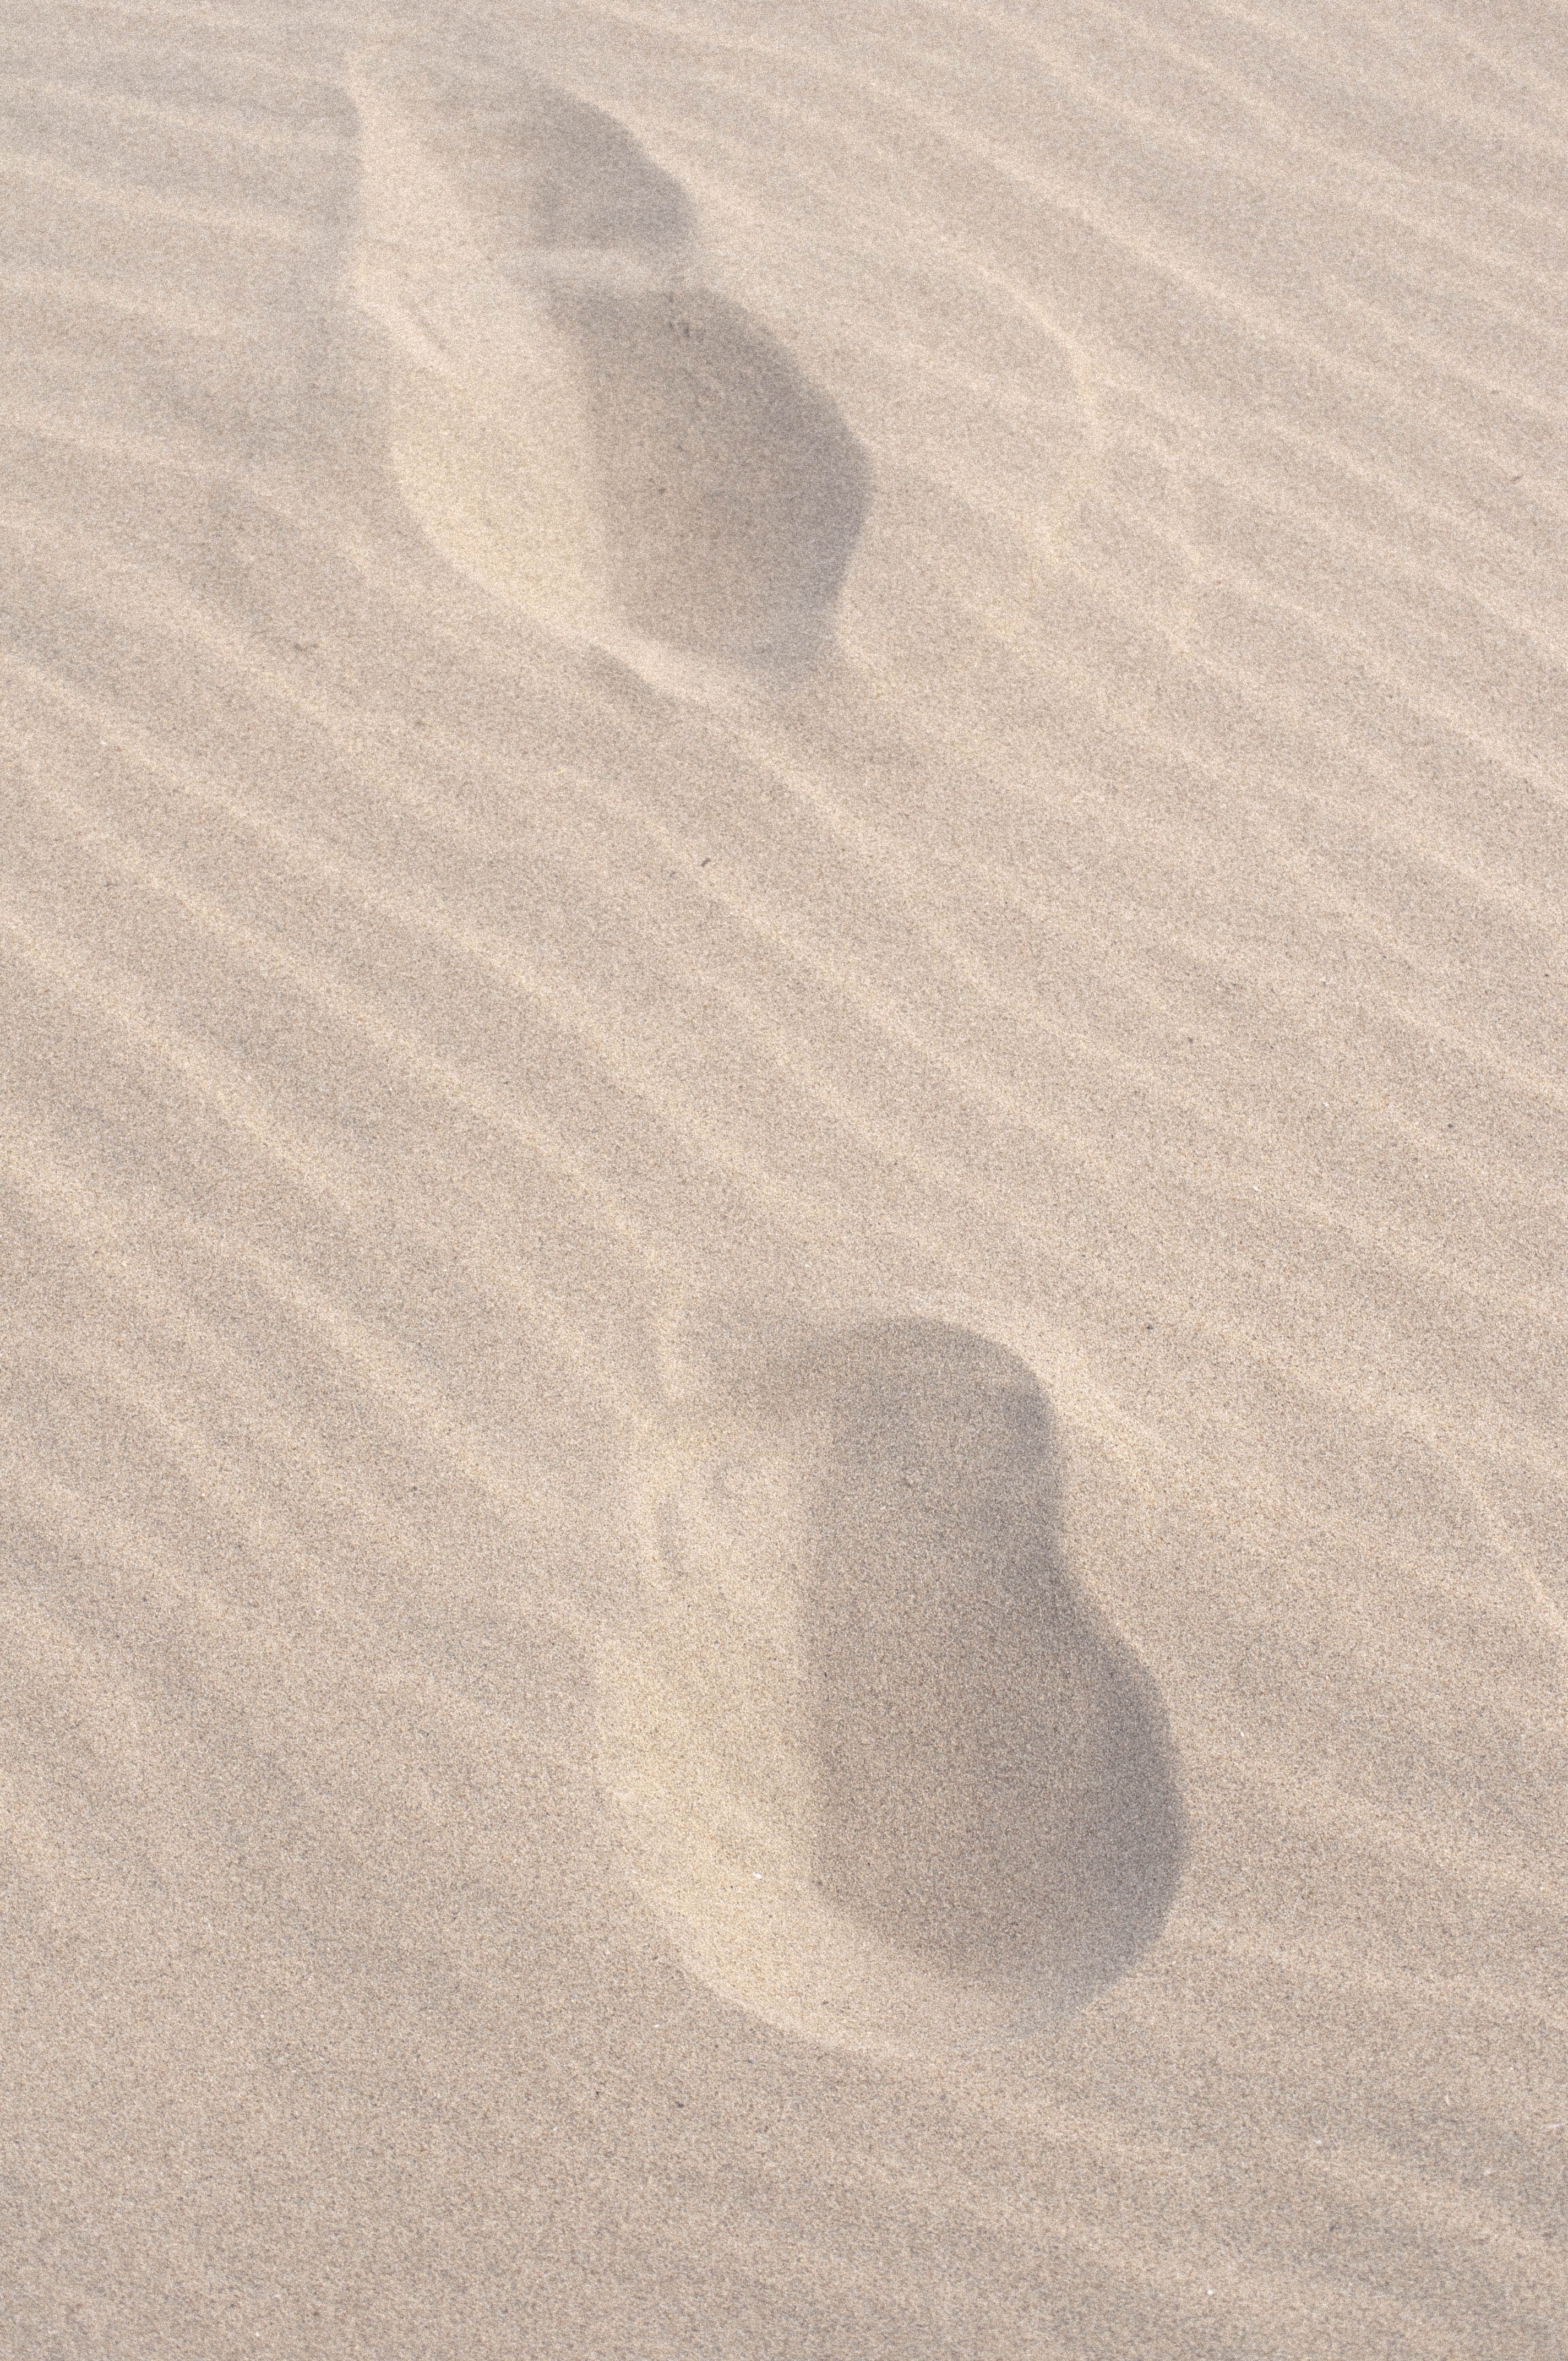 sand, beach, miscellanea, miscellaneous, traces